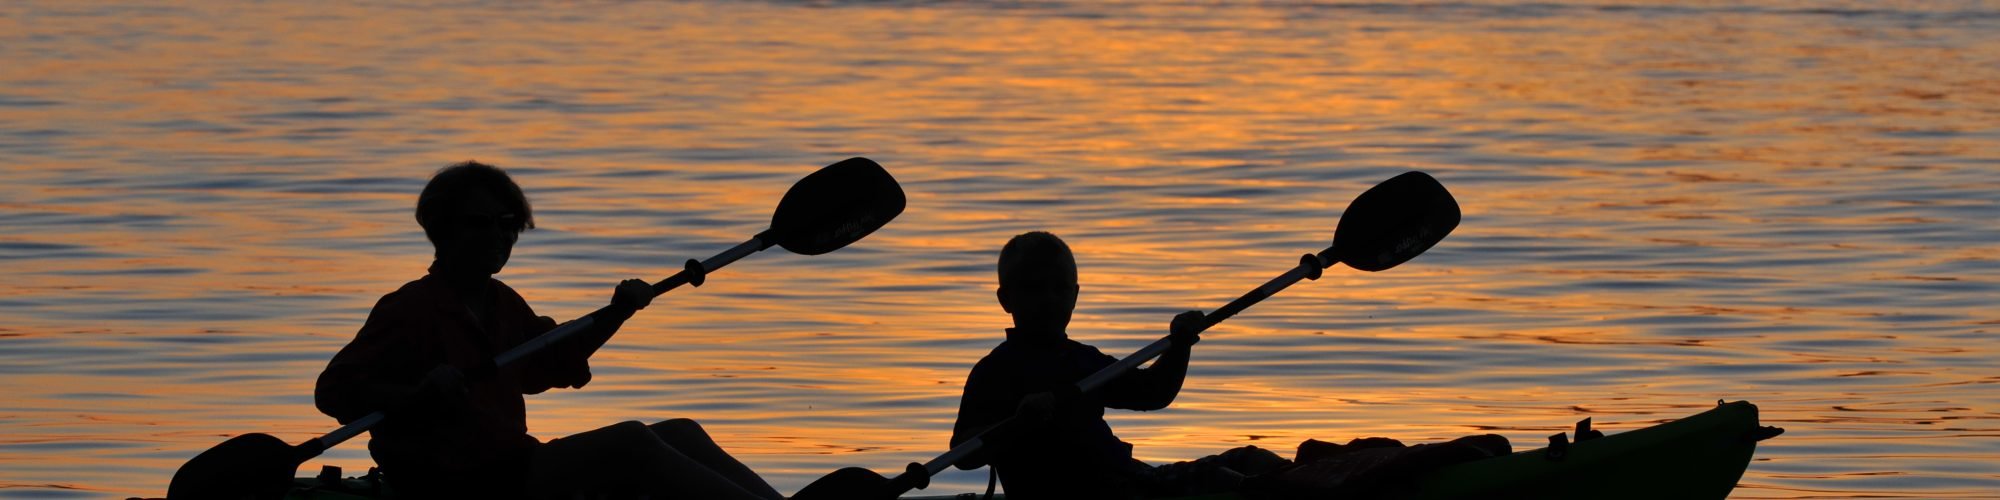 two people kayaking at sunset